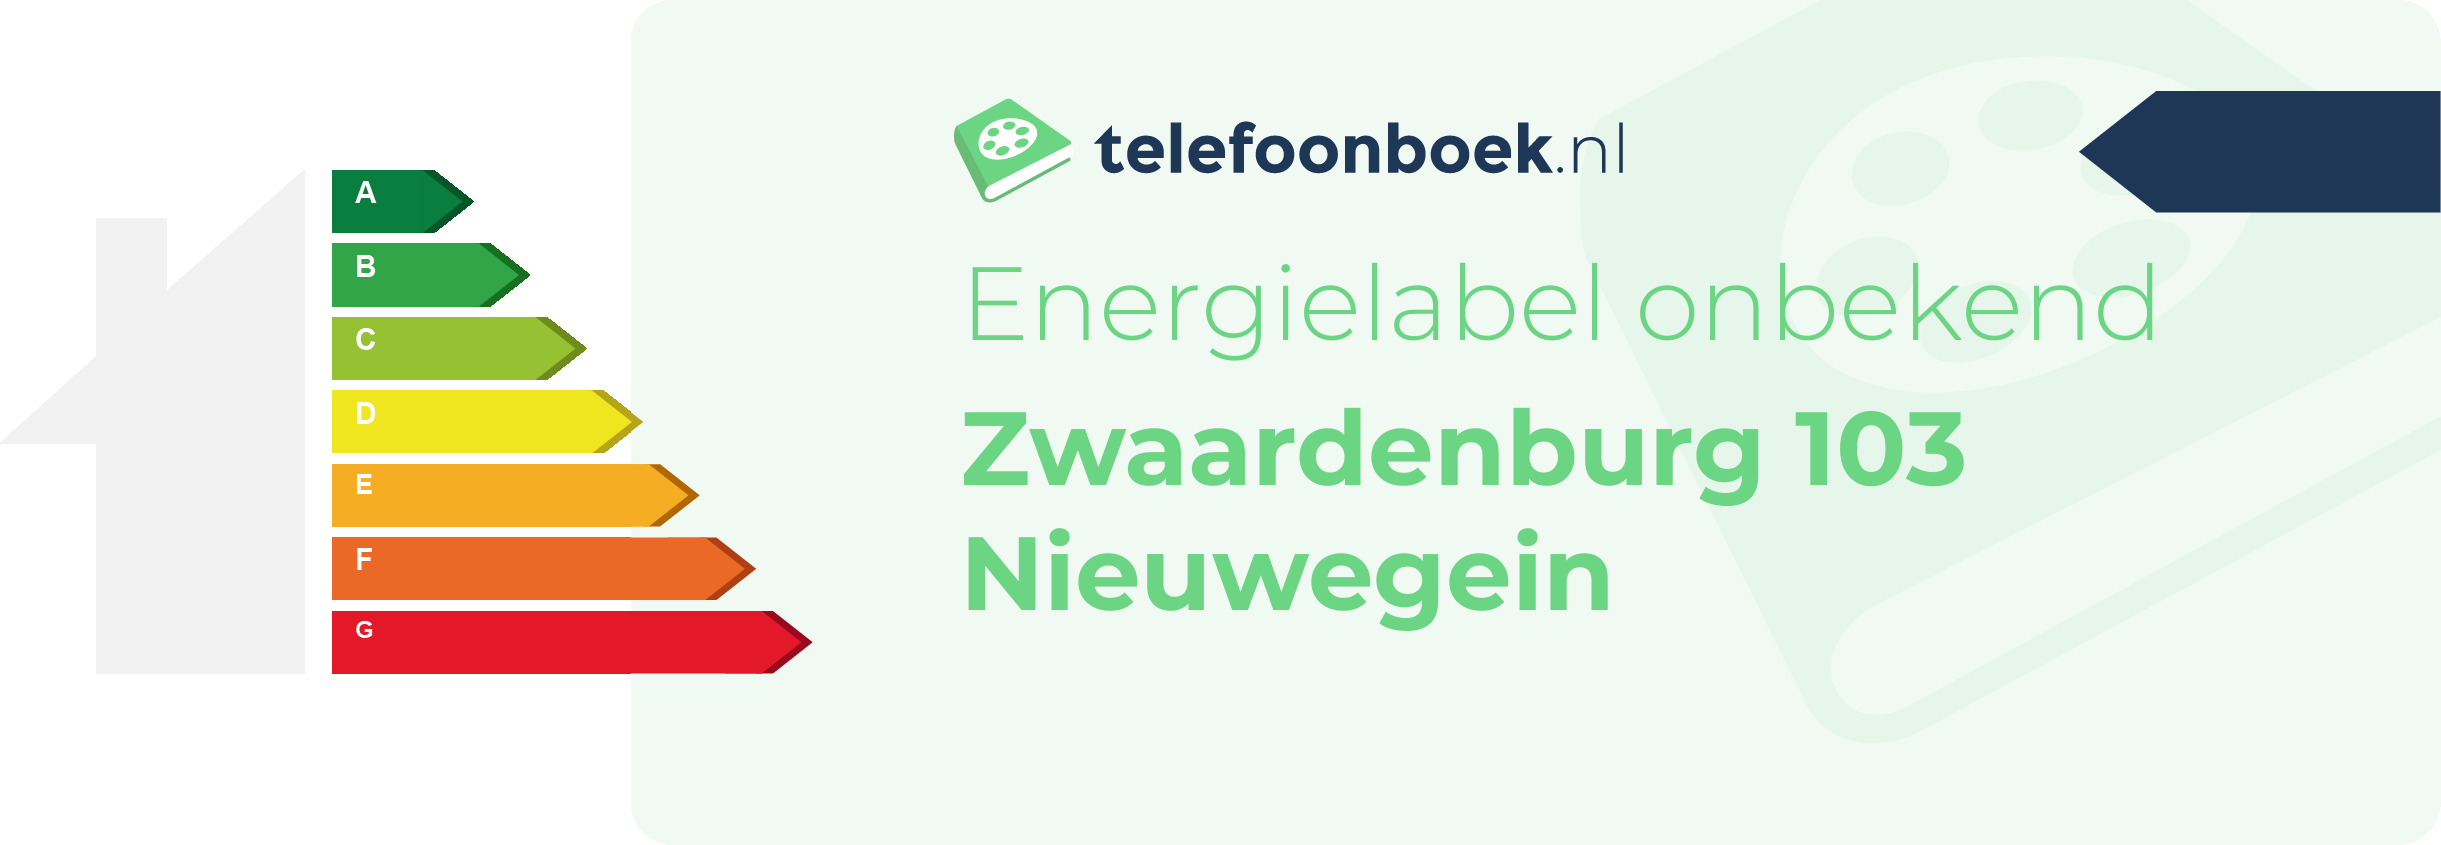 Energielabel Zwaardenburg 103 Nieuwegein